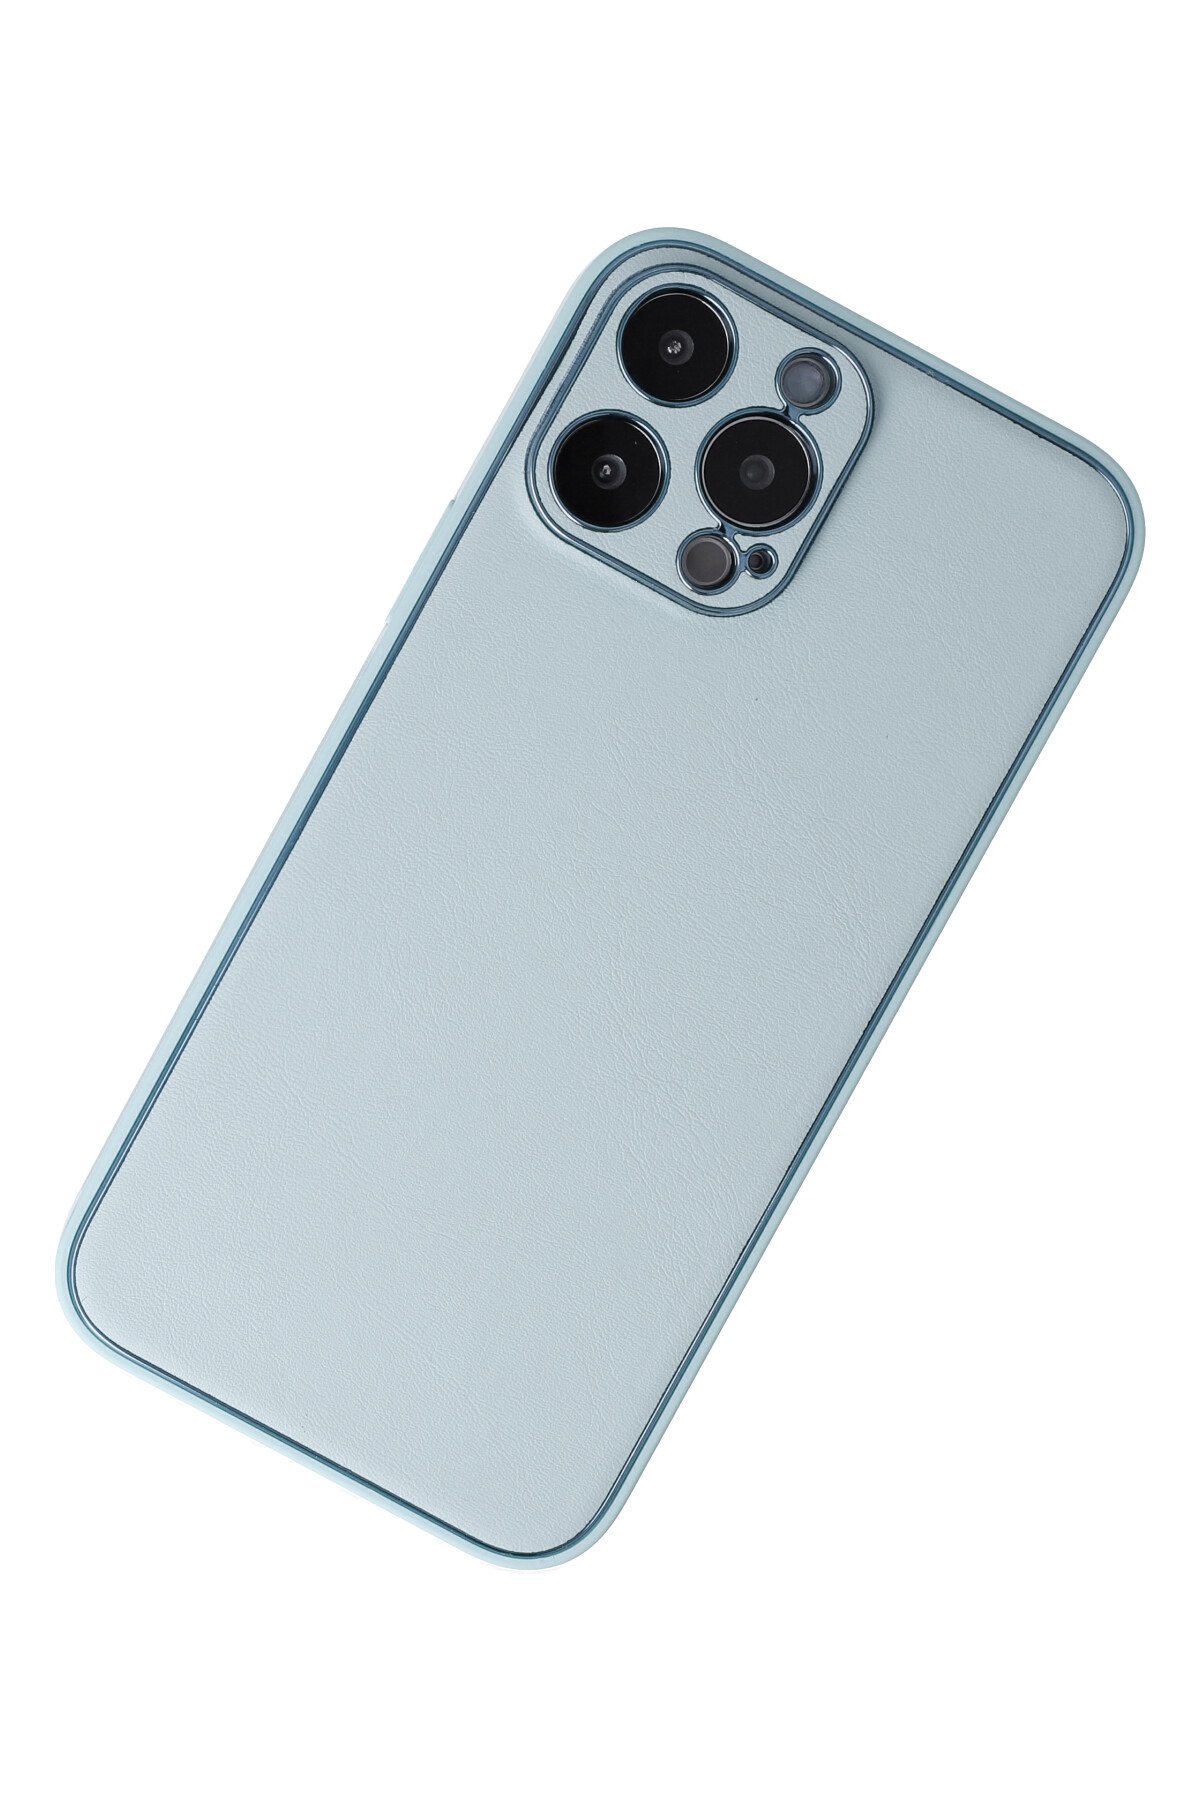 Newface iPhone 13 Pro Max Kılıf 360 Hayalet Full Body Silikon Kapak - Beyaz